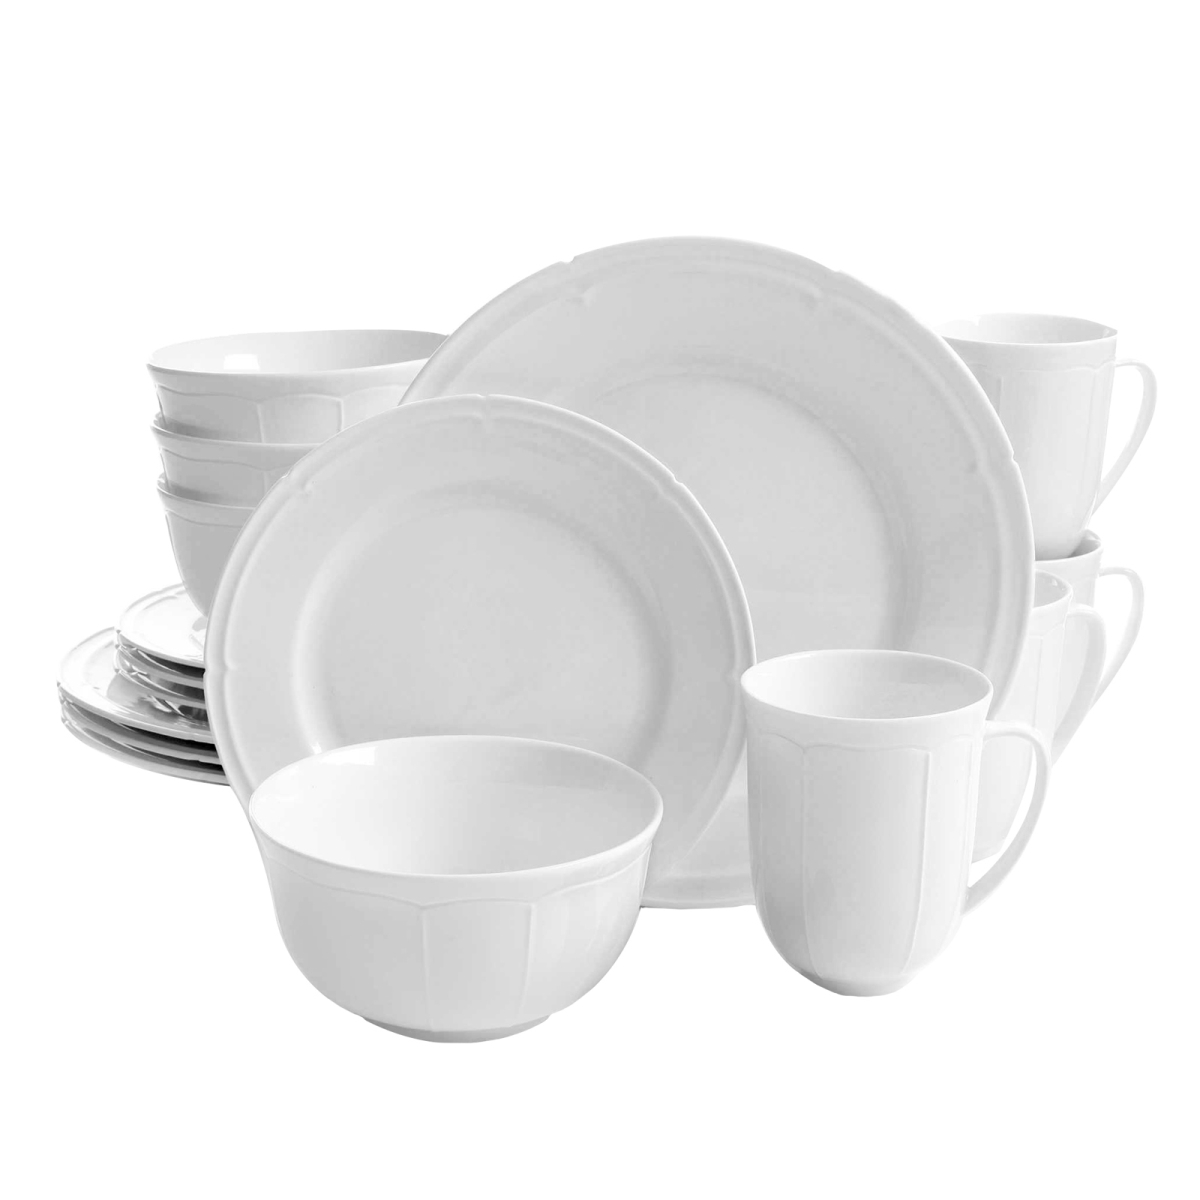 94741.16 16 Piece Paton Dinnerware Set - White